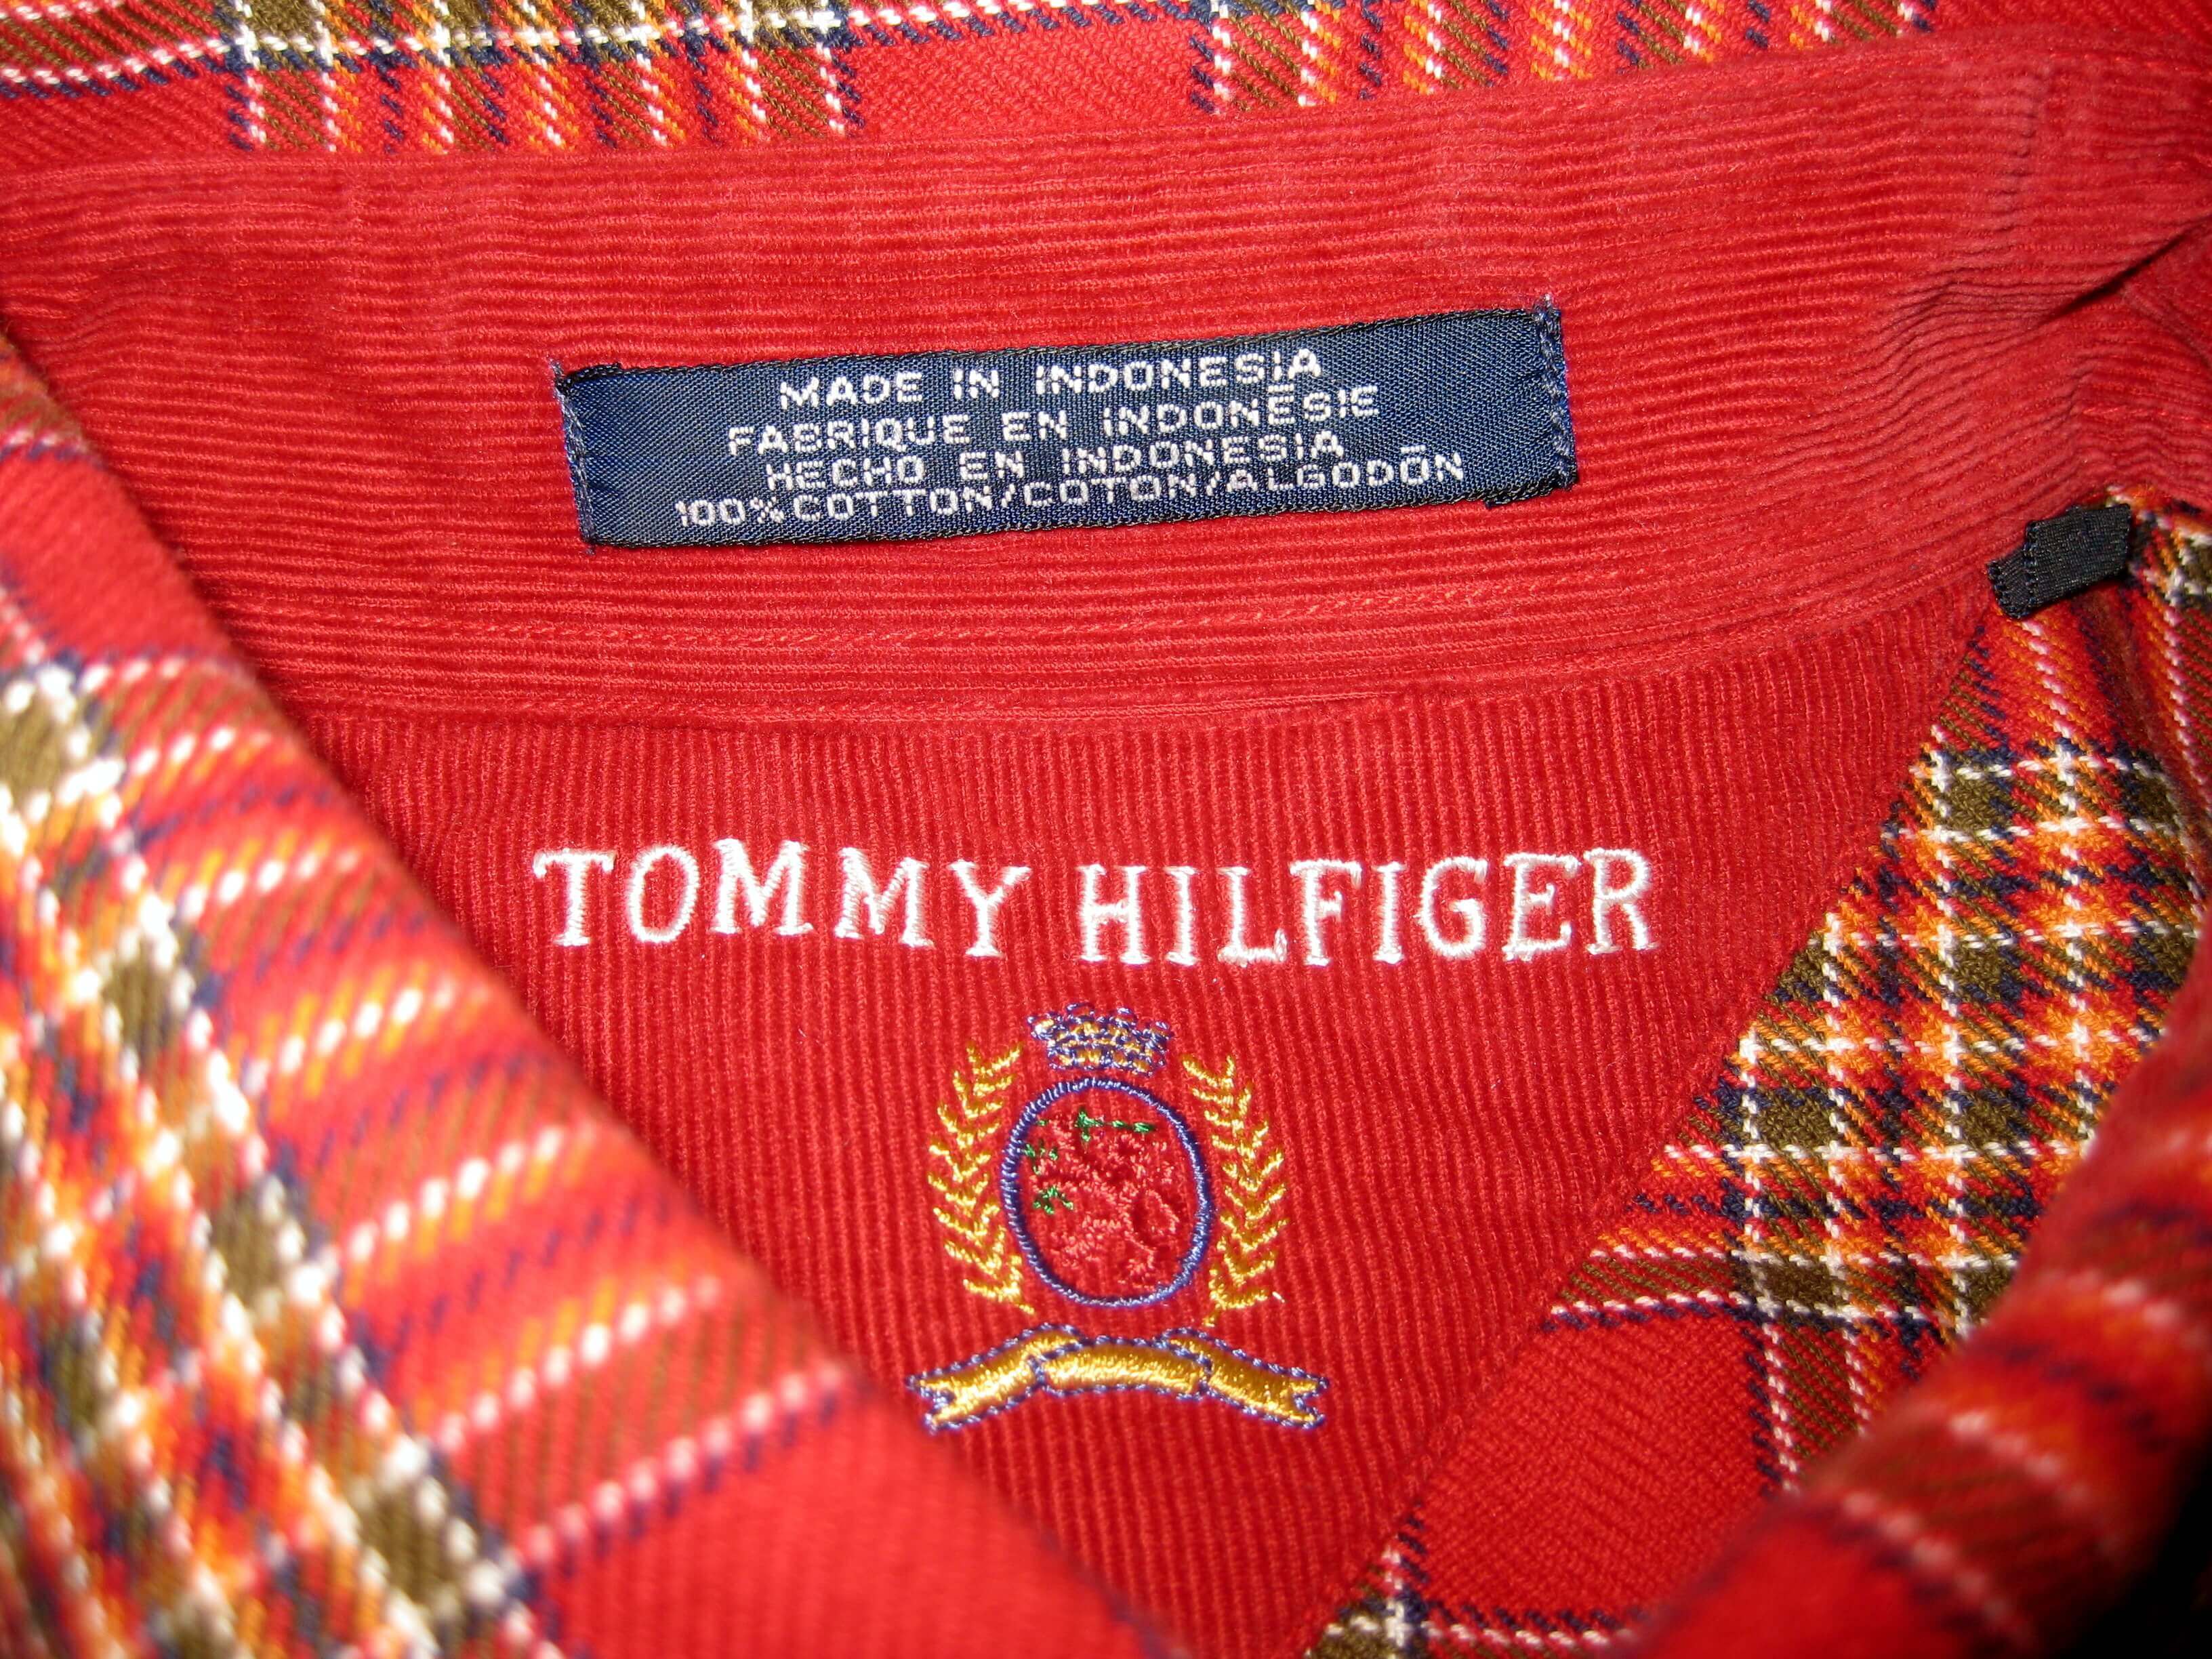 Tommy Hilfiger Lion Logo - Tommy Hilfiger - eBay Clothing Series #3 - Flipping A Dollar